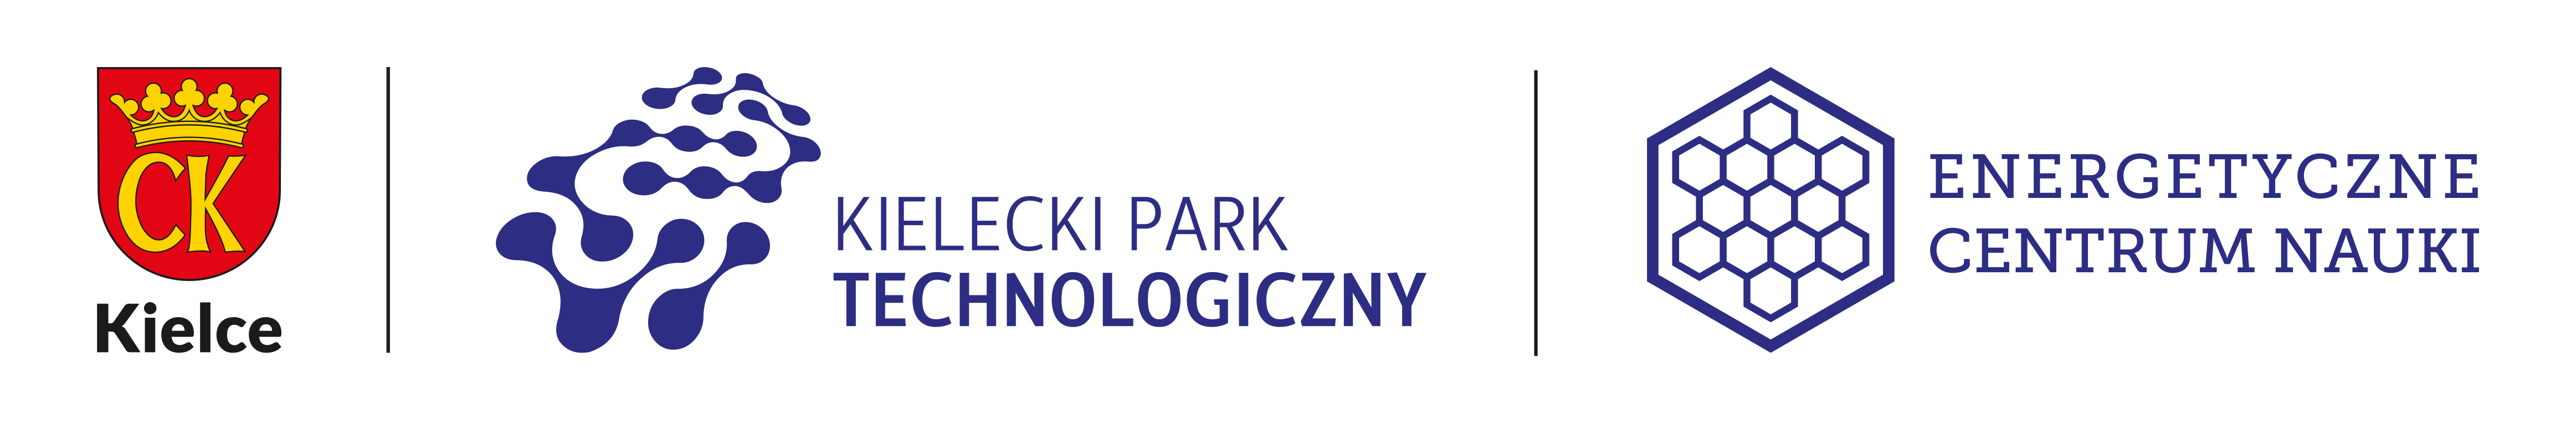 Kielecki Park Technologiczny